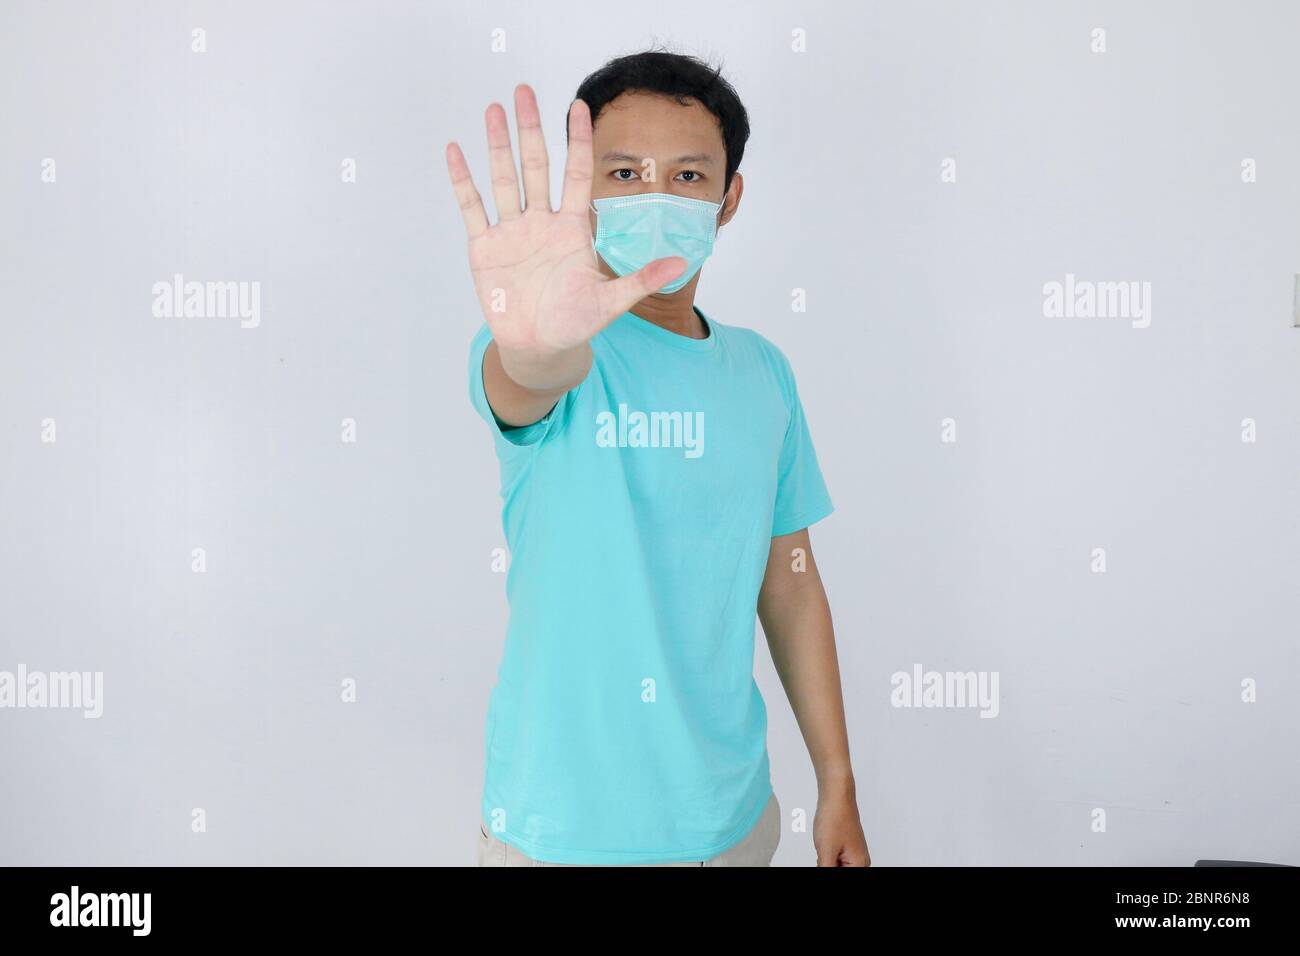 Junge asiatische Mann tragen hygienische Maske ist erschrocken oder Panik mit gesturing Stop Hand. Angst vor Coronavirus-Infektion oder Atemwegserkrankungen wie f Stockfoto